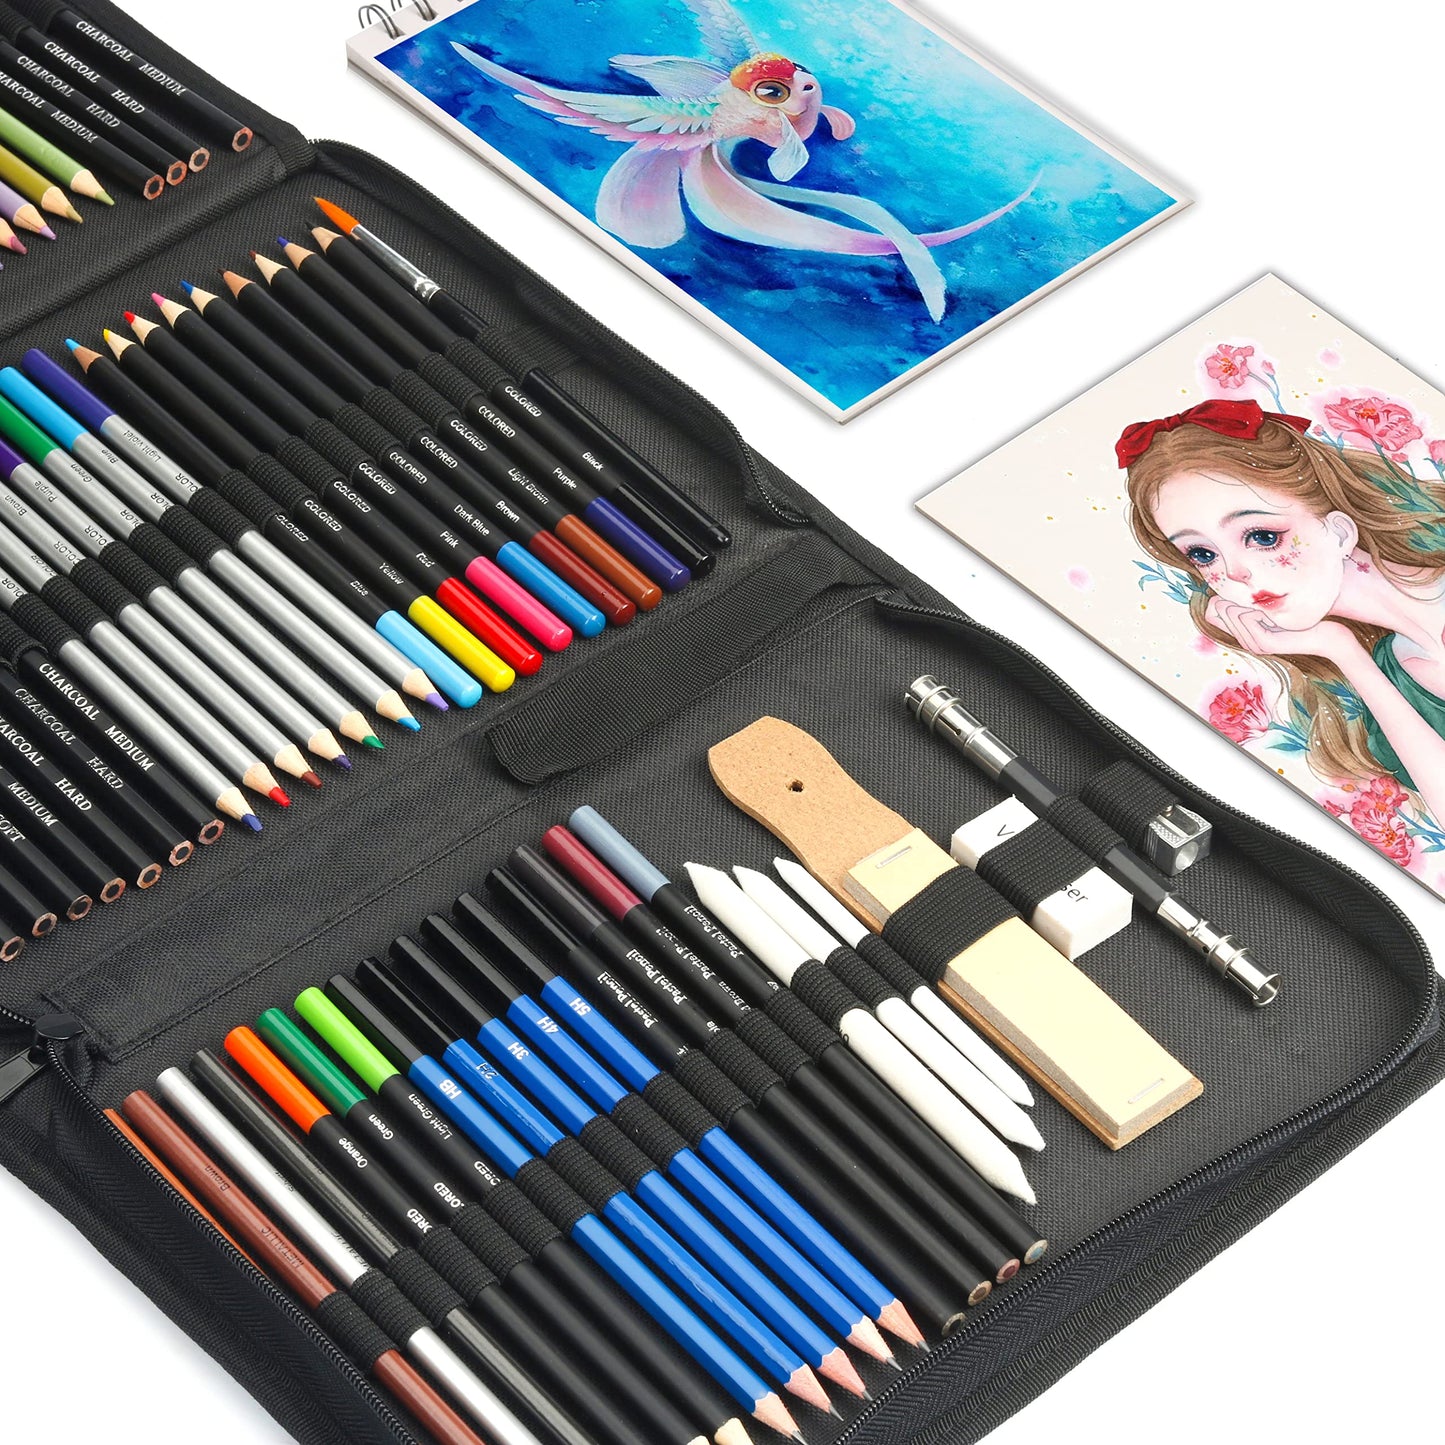 KALOUR 76pc Art Supply Set - Sketching & Drawing Kit